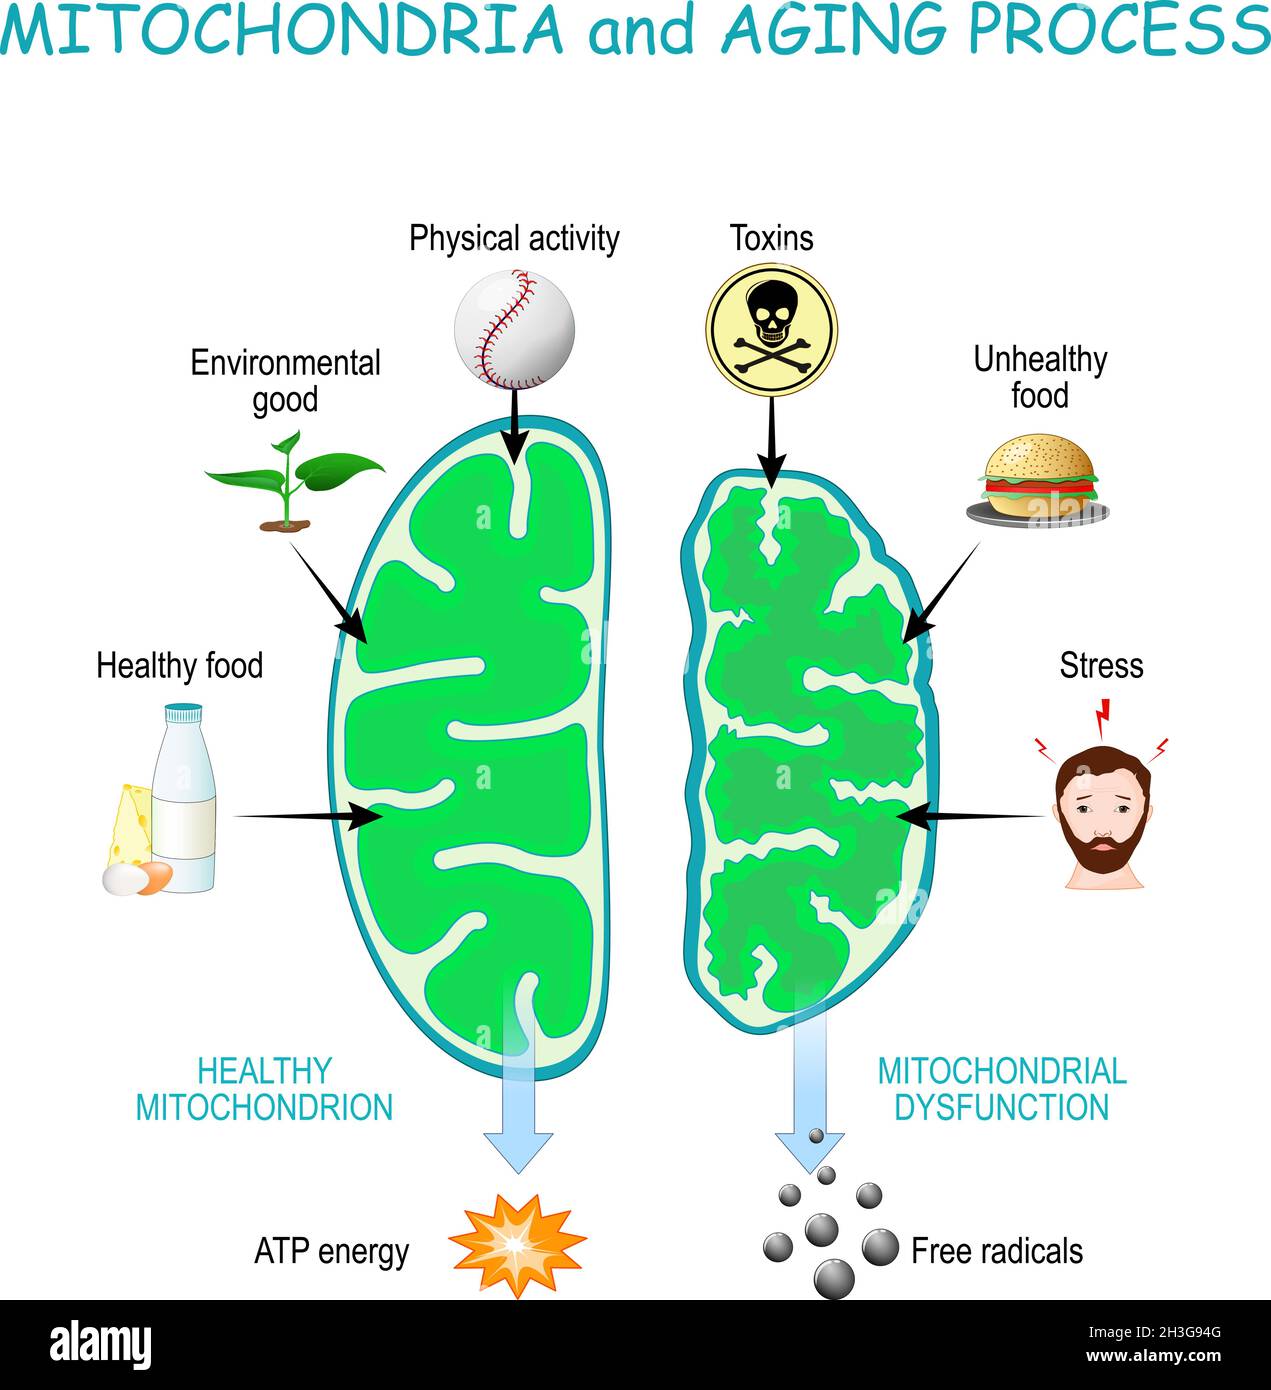 Mitochondrien und Alterungsprozess. Gesunde Mitochondrien produzieren ATP-Energie, Zellorganellen mit Dysfunktion produzieren freie Radikale. Stock Vektor